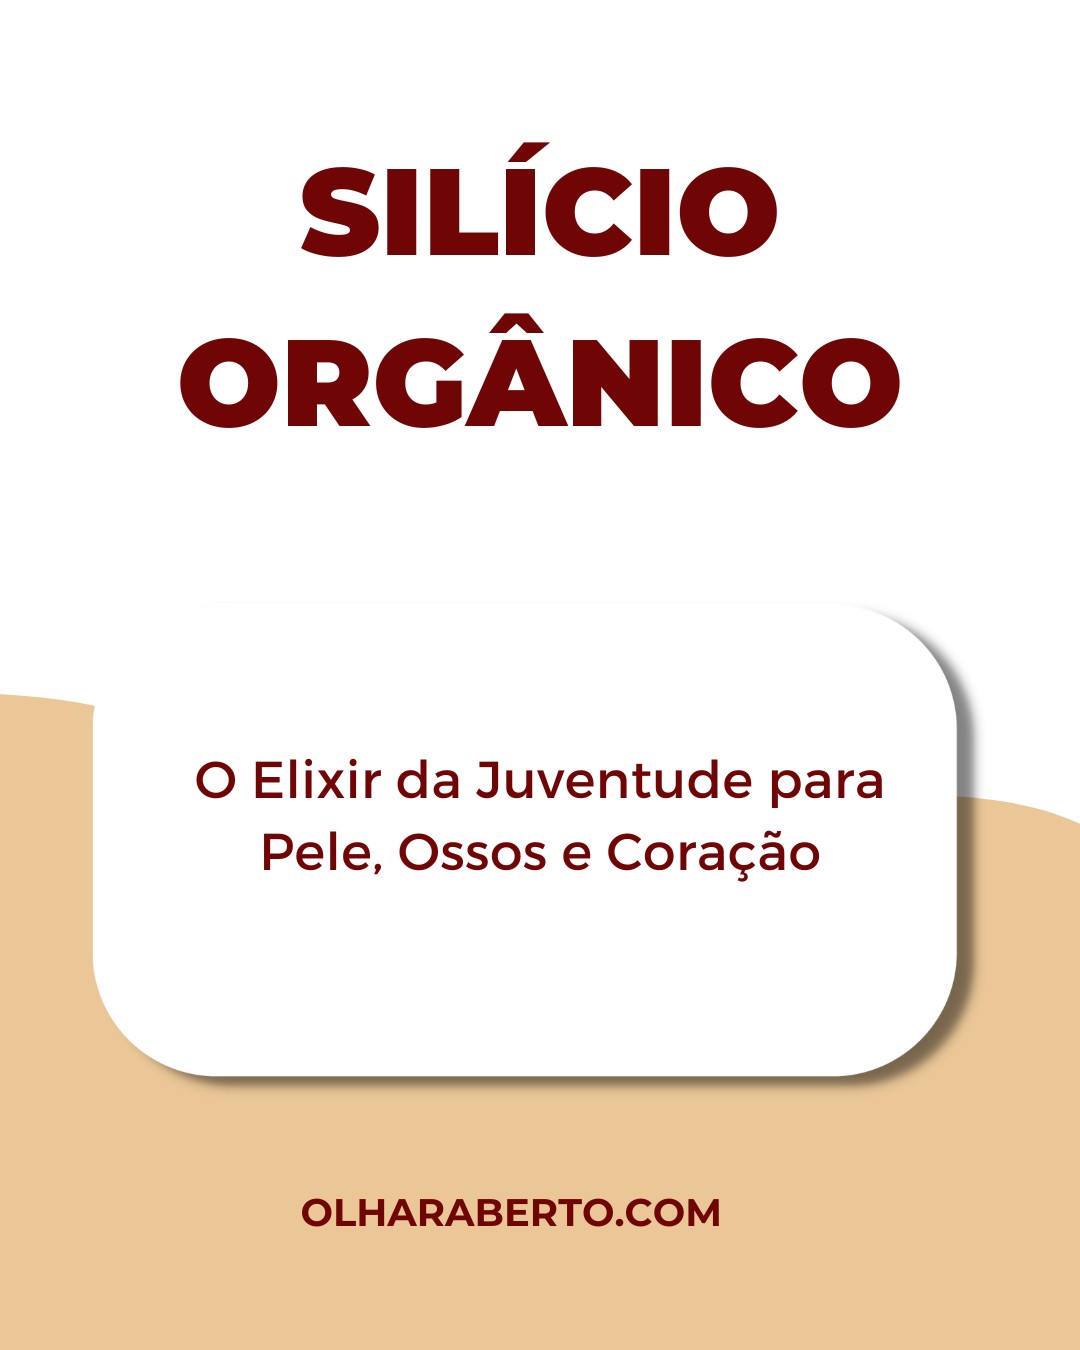 You are currently viewing Silício Orgânico: O Elixir da Juventude para Pele, Ossos e Coração